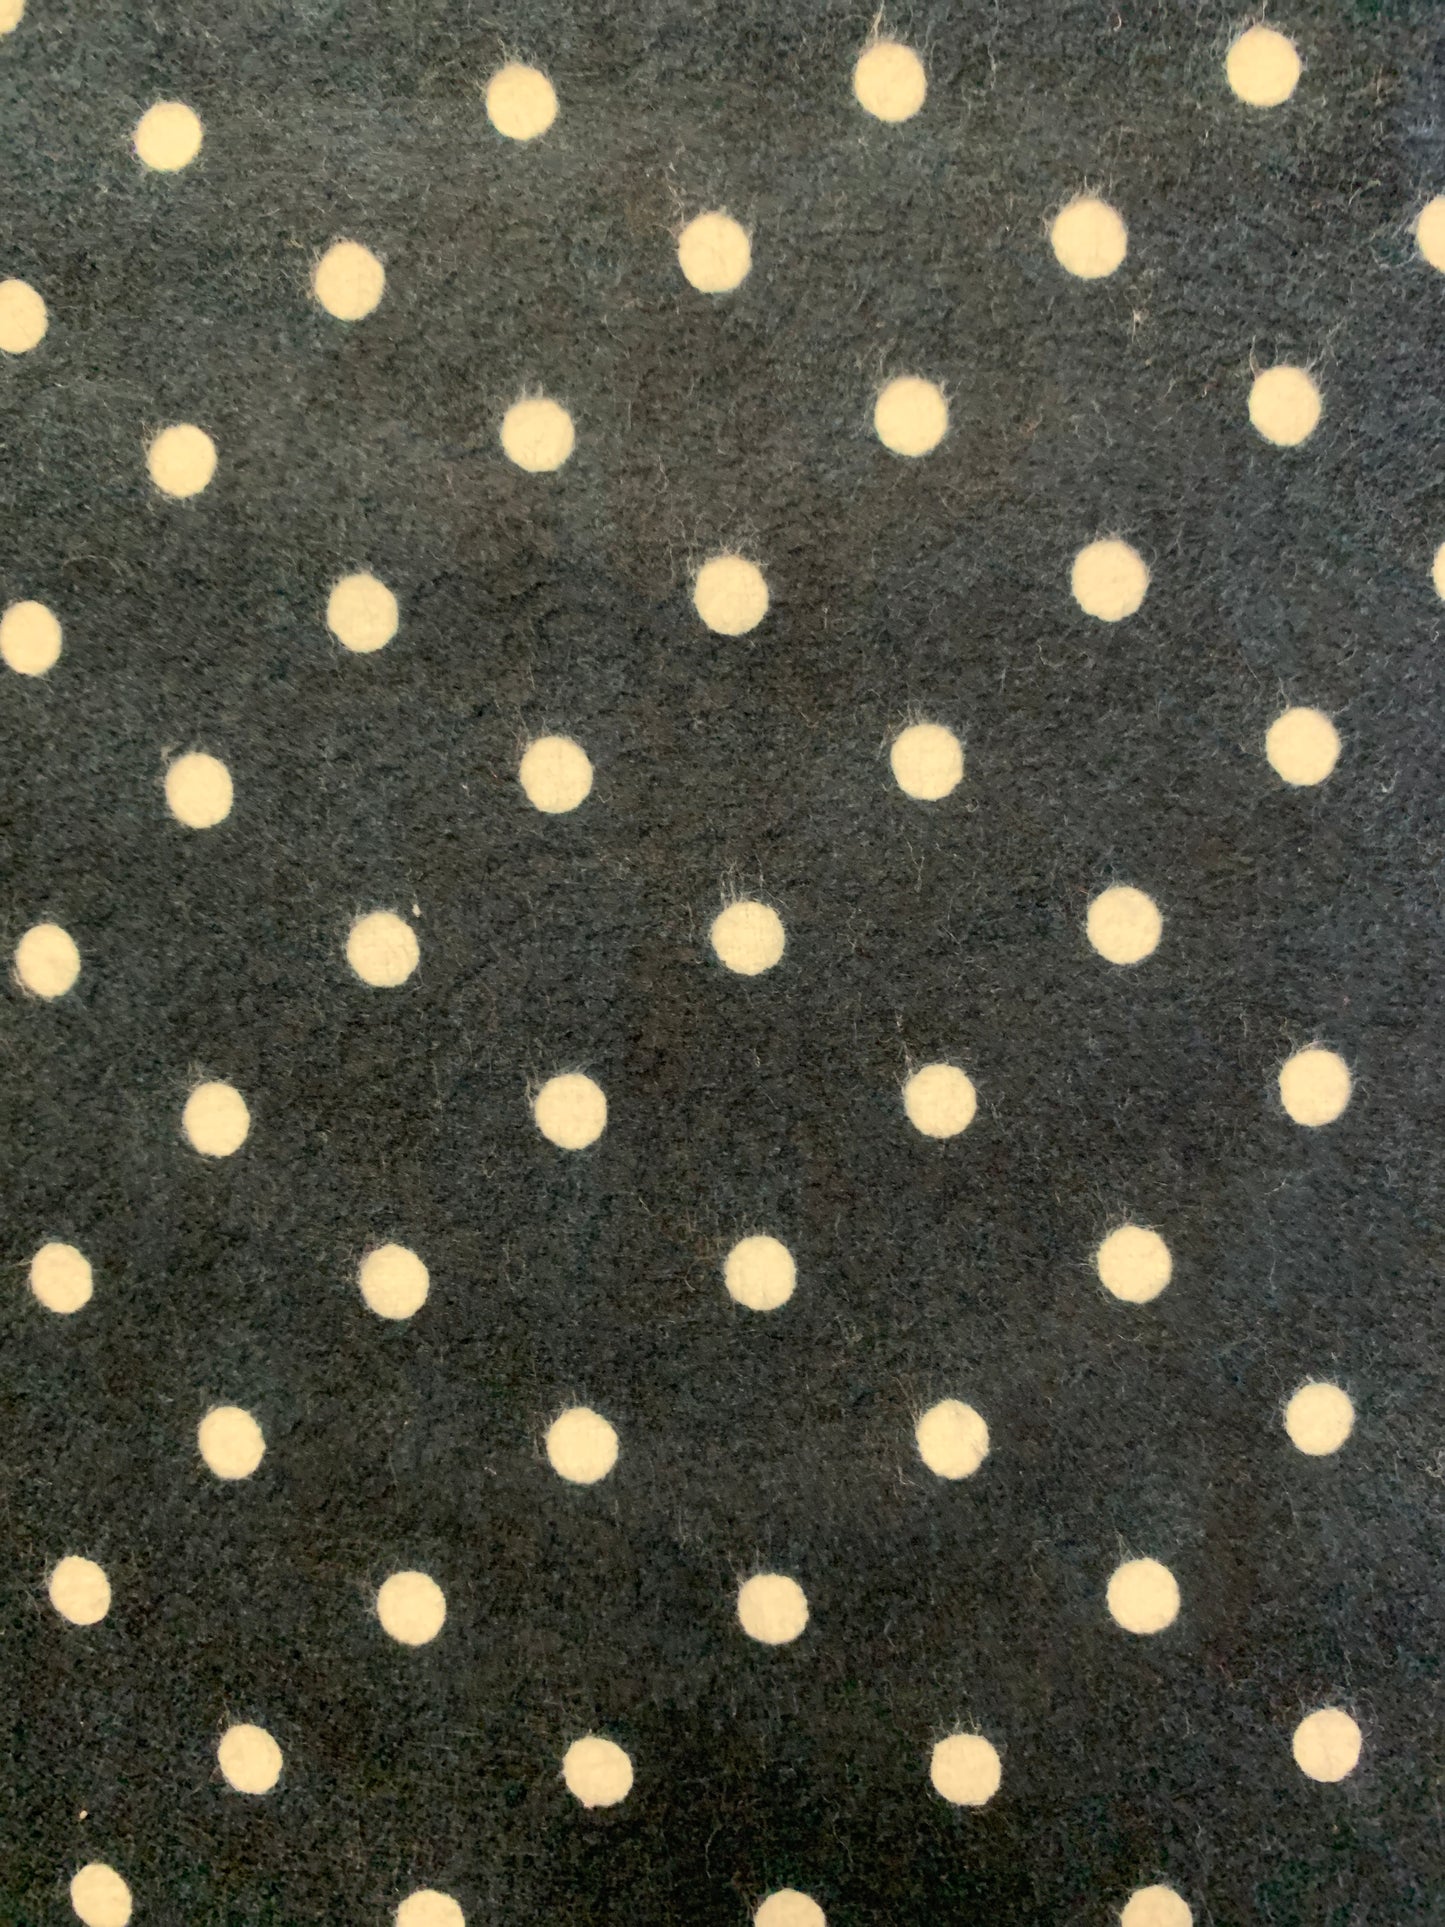 Flannel 2571-Dark Navy with white dots